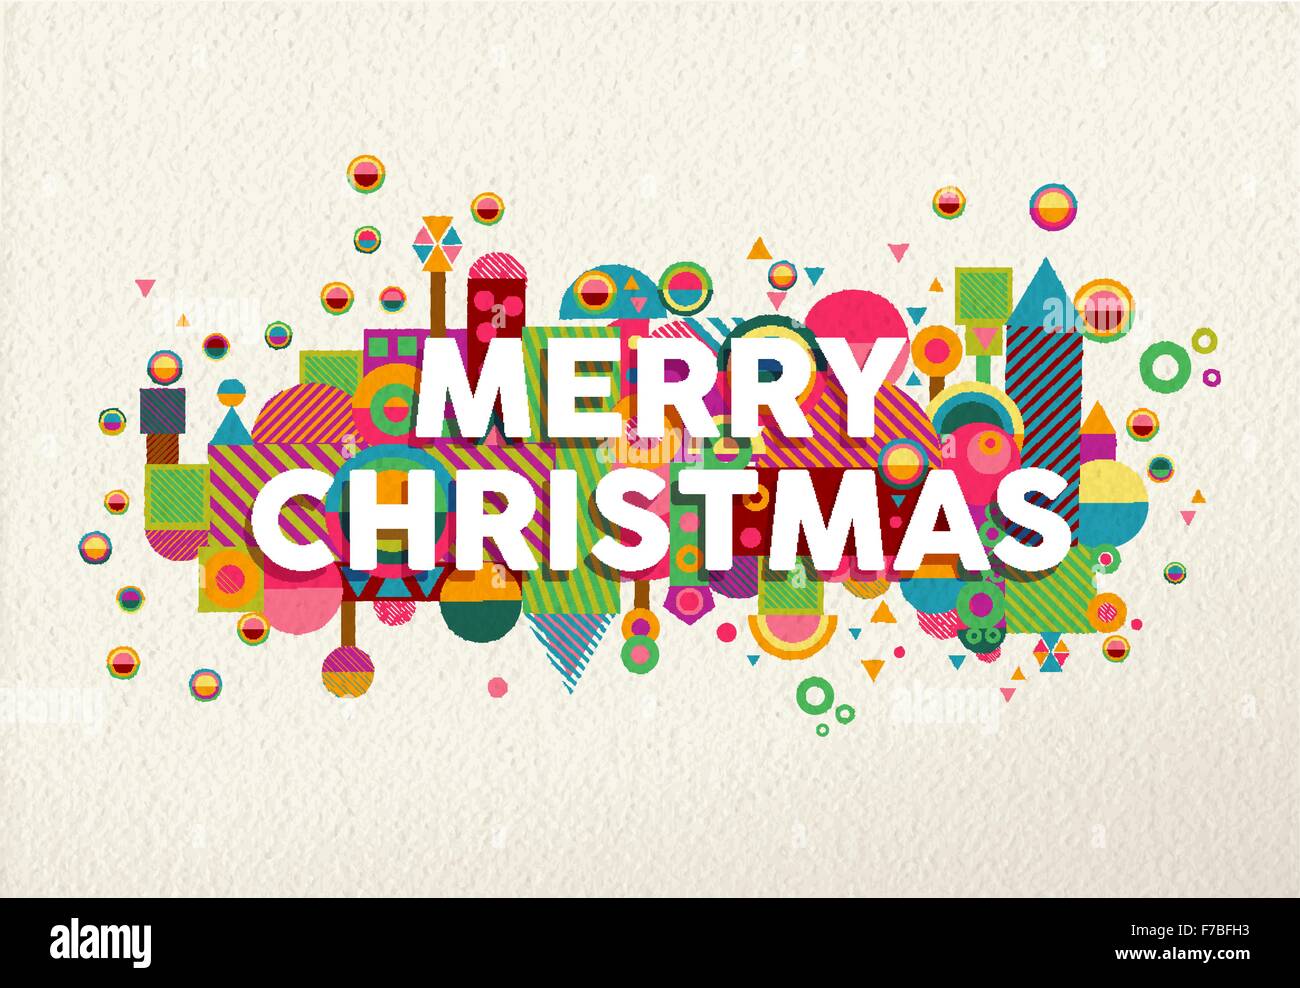 Frohe Weihnachten-leuchtenden Farben-Poster mit Spaß Geometrie Formen in Umwelt Zusammensetzung Abbildung. Ideal für Weihnachten Gruß Stock Vektor